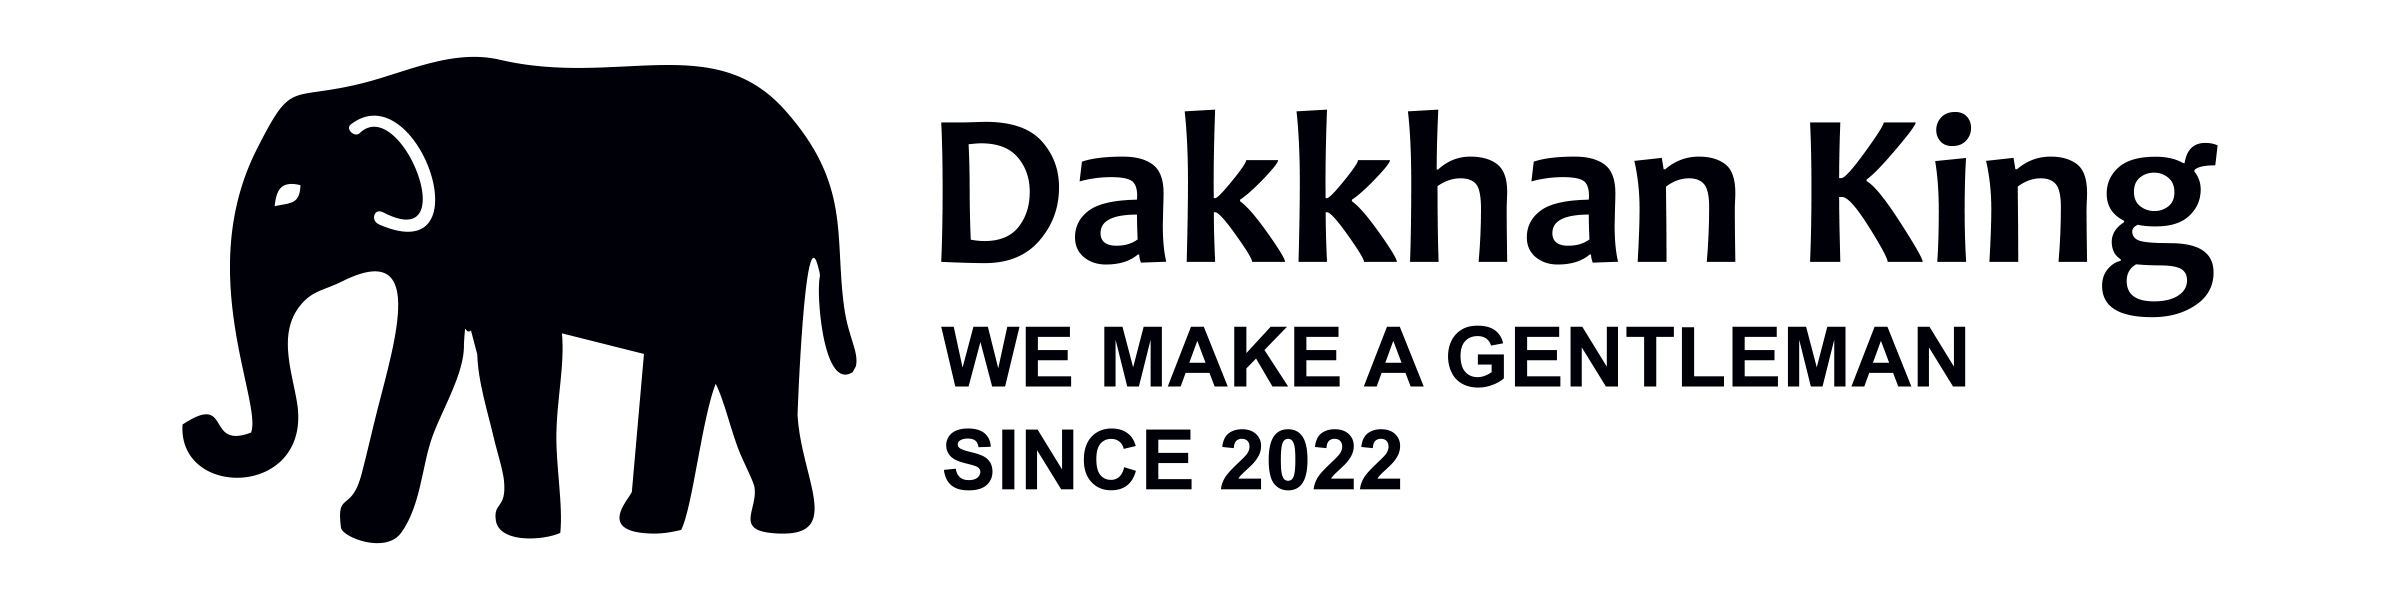 Dakkhan King